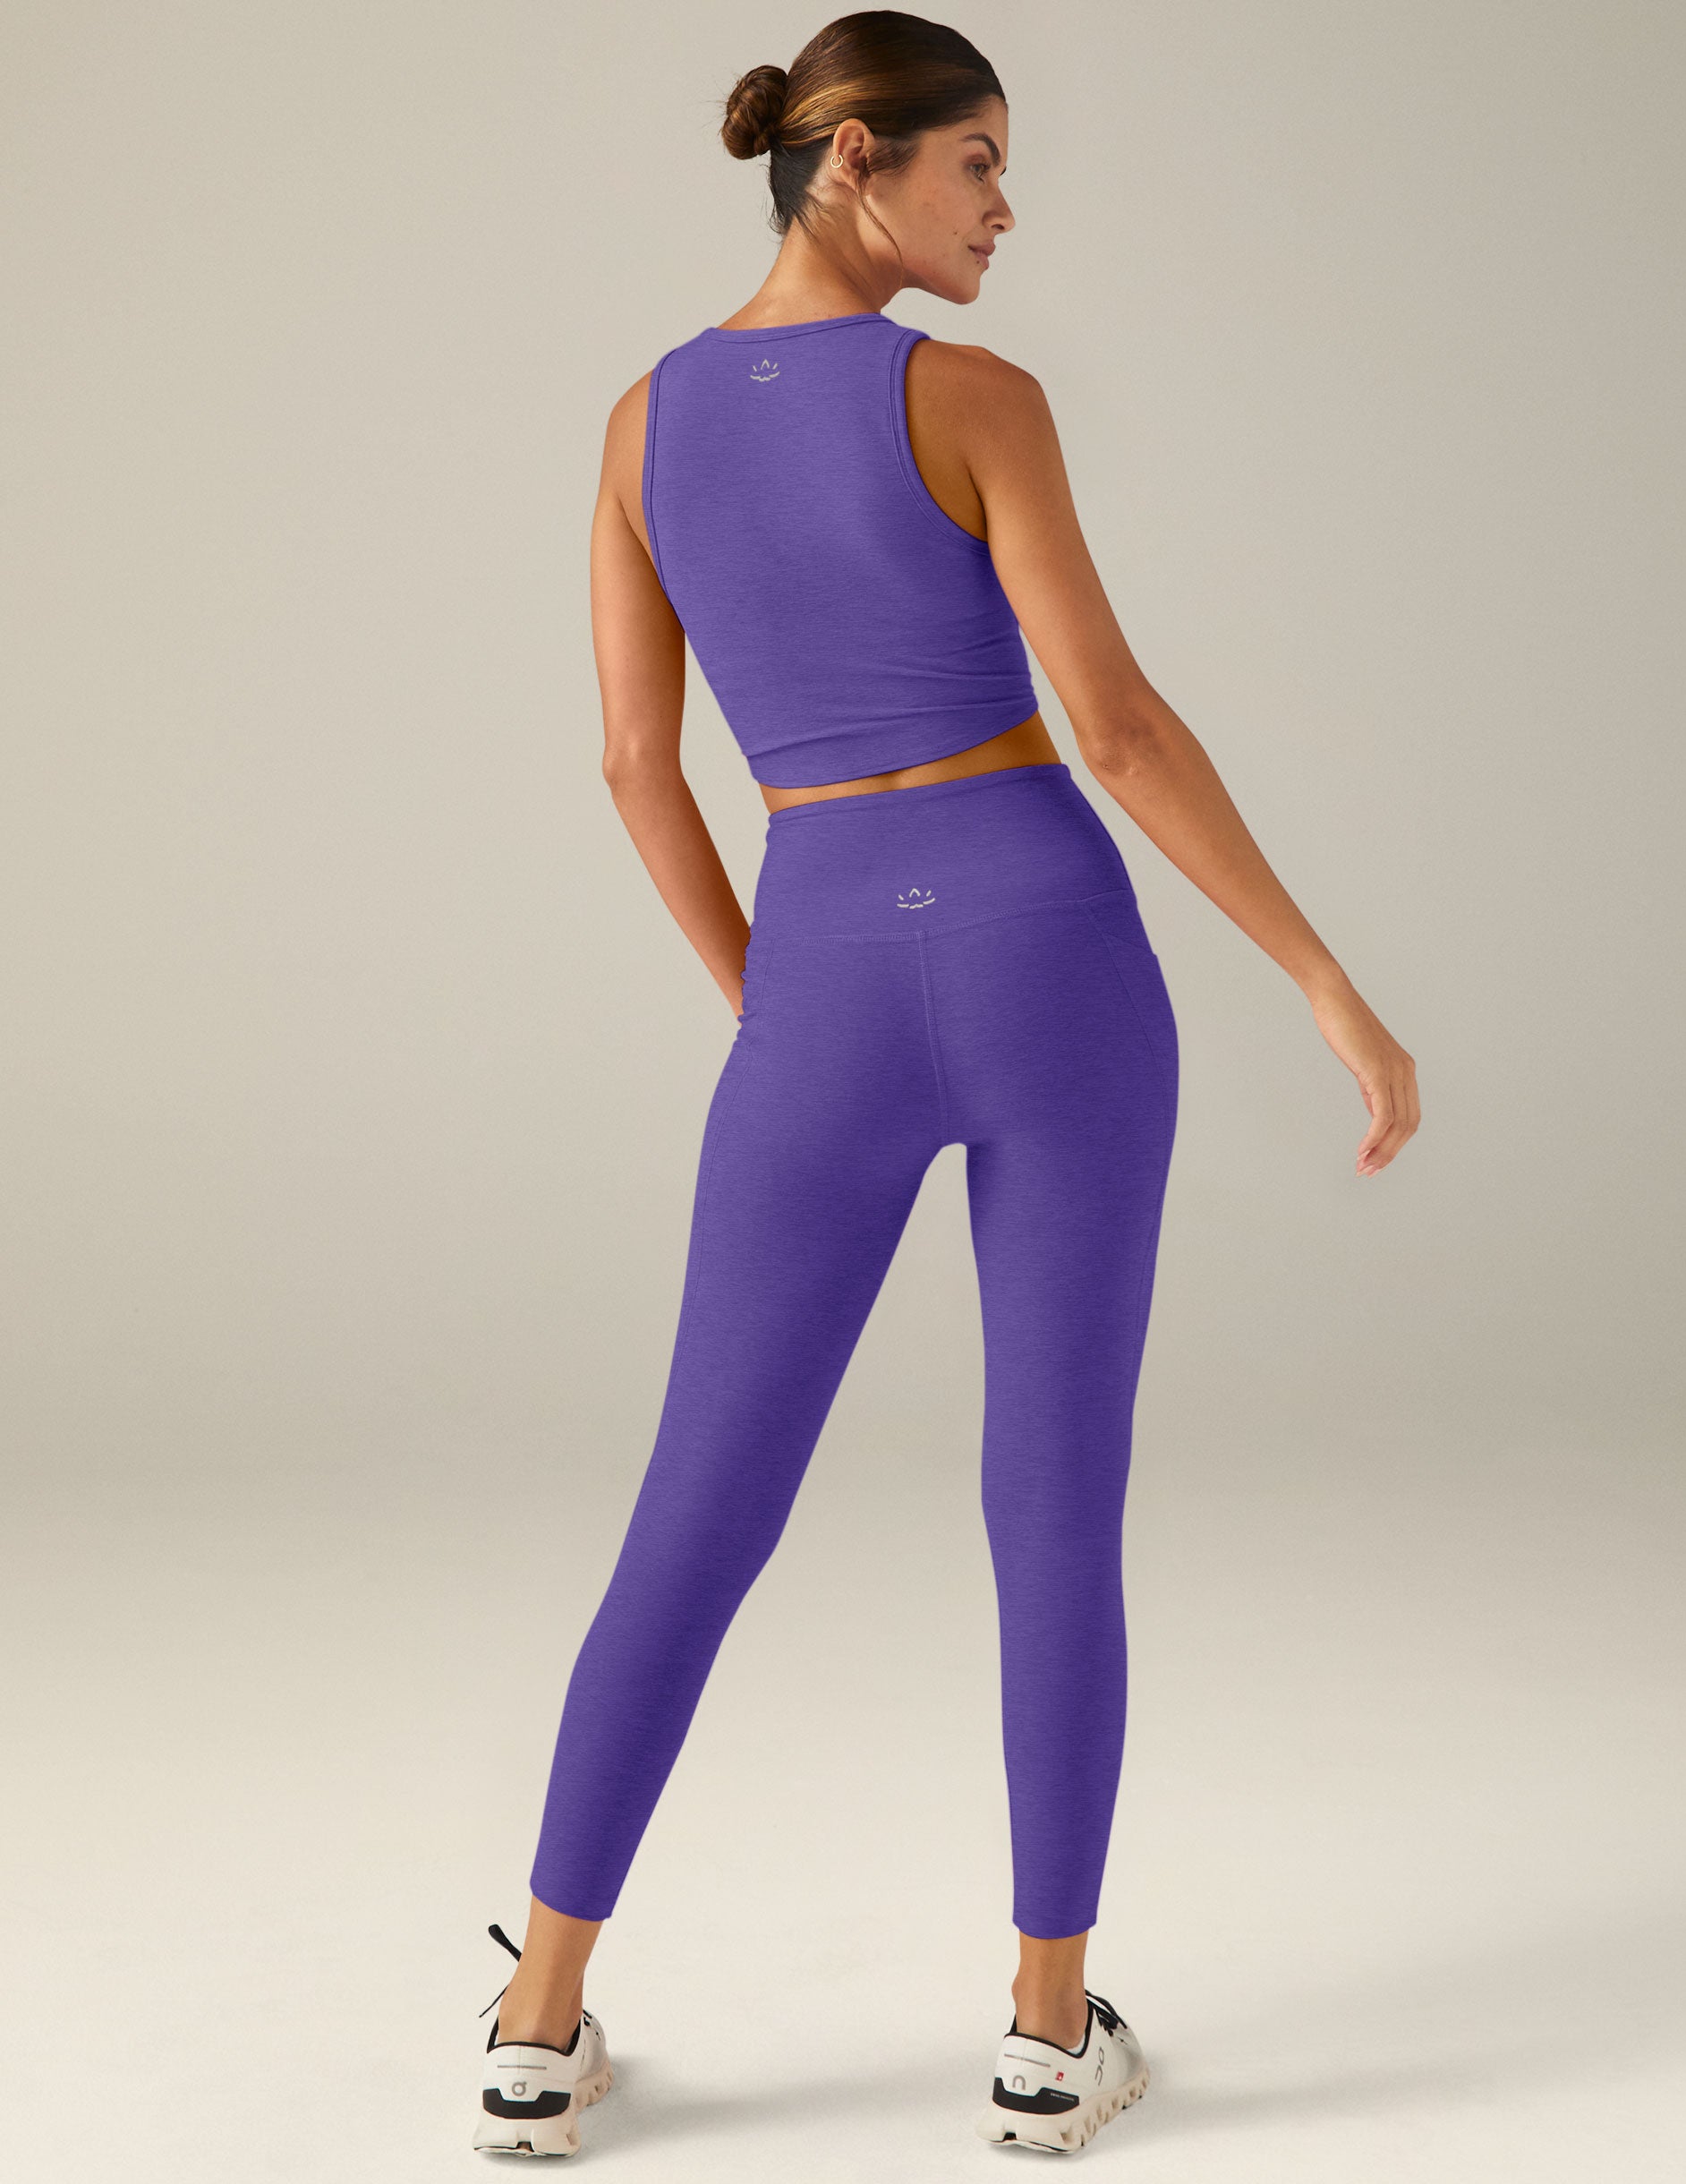 Beyond Yoga Women’s Size XL Purple Spacedye High Waisted Leggings W/Pockets